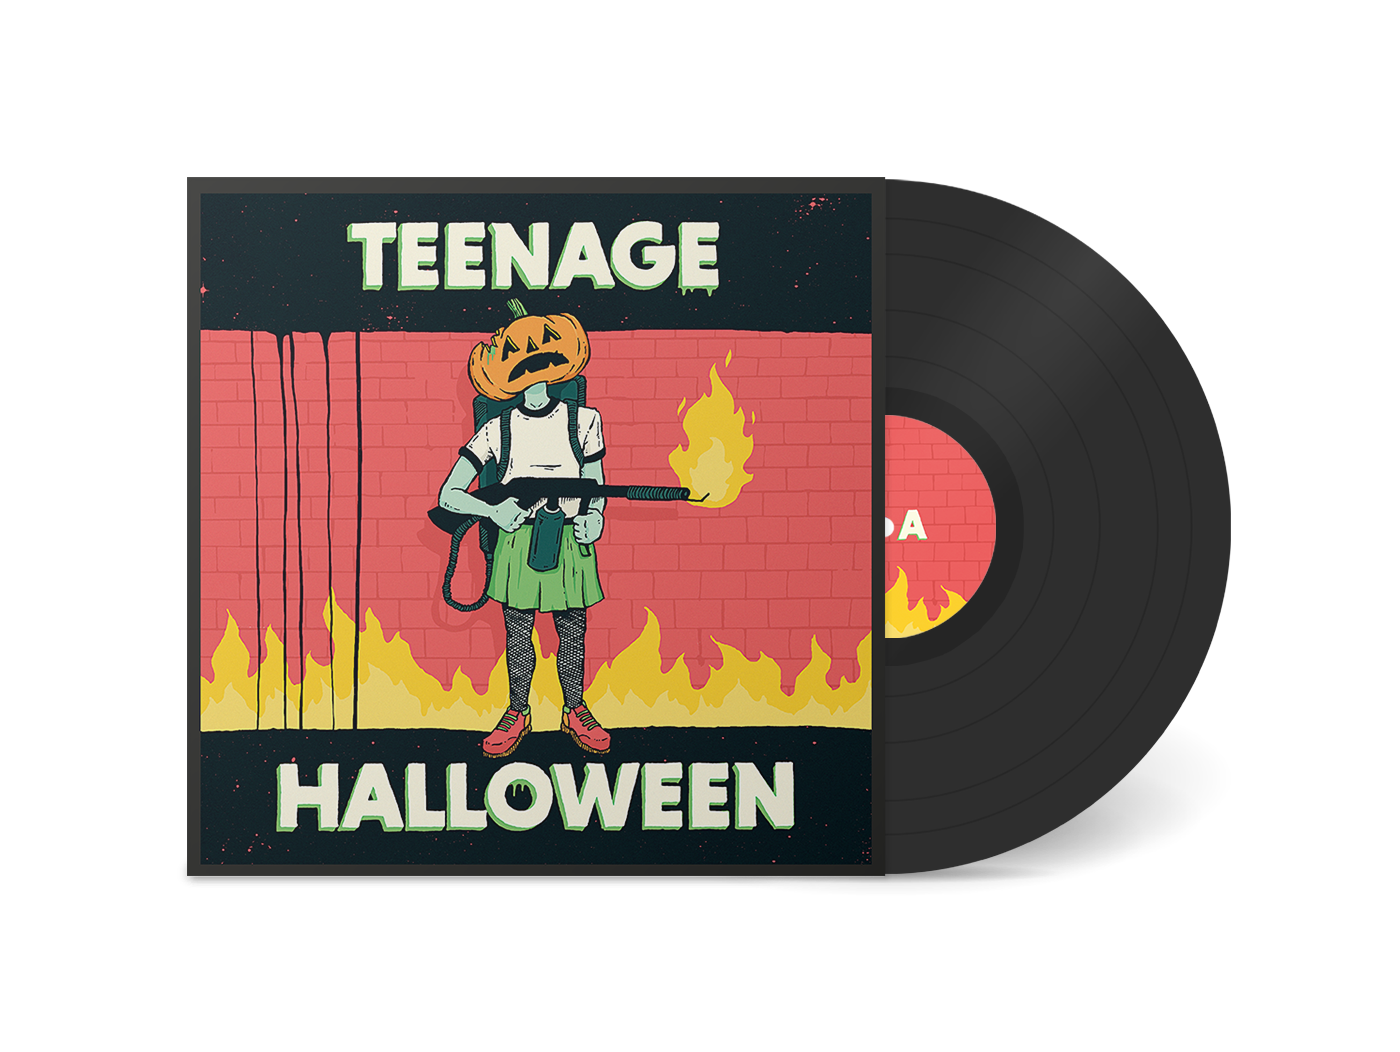 Teenage Halloween "Teenage Halloween" 12"